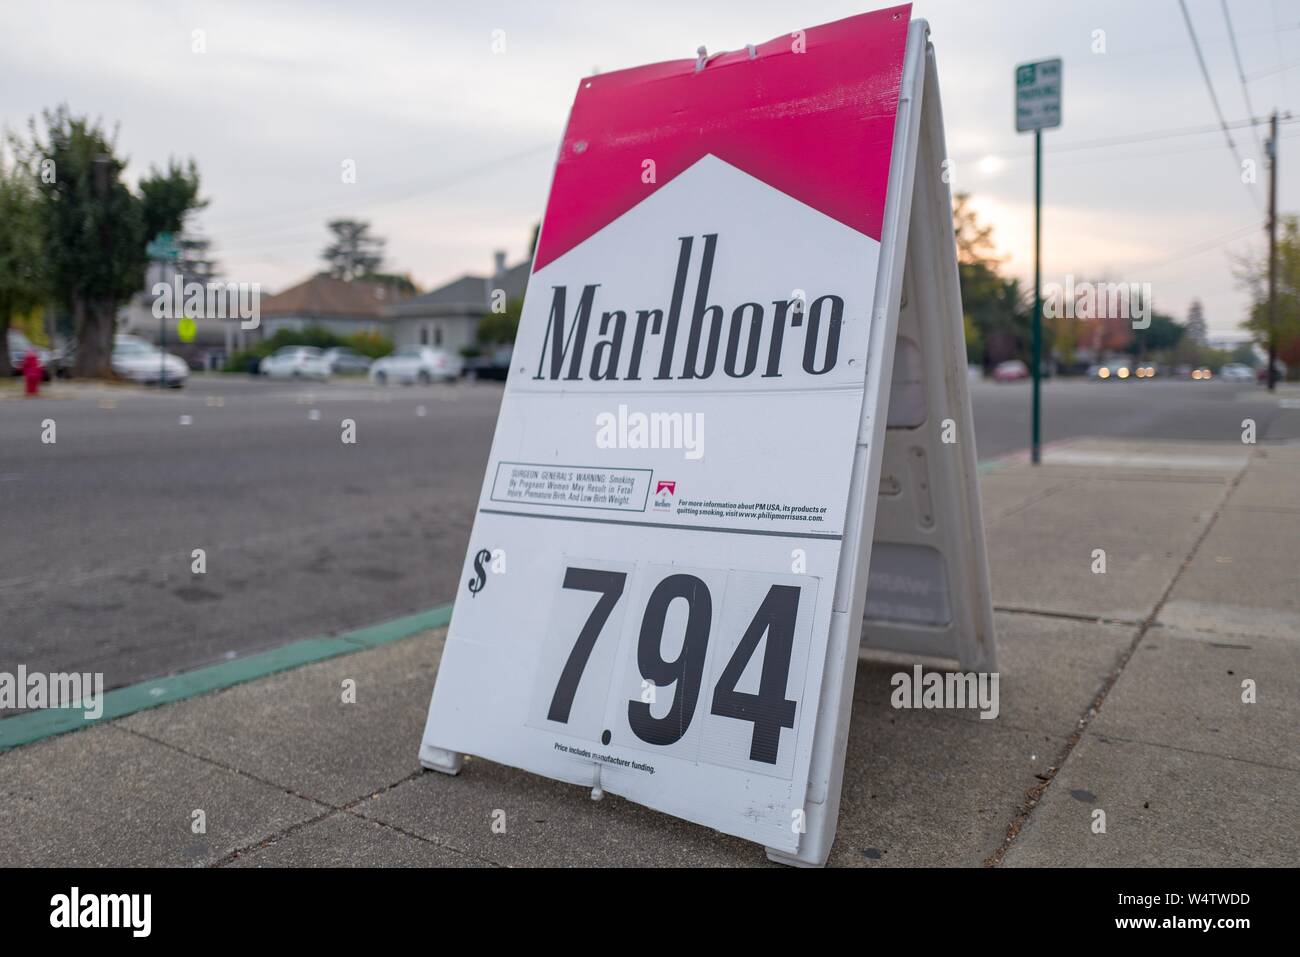 A basso angolo di visione del segno di piegatura con logo per sigarette Marlboro, un marchio di conglomerato di tabacco Philip Morris, con prezzo superiore a sette dollari, in downtown Livermore, California, 19 novembre 2018. () Foto Stock